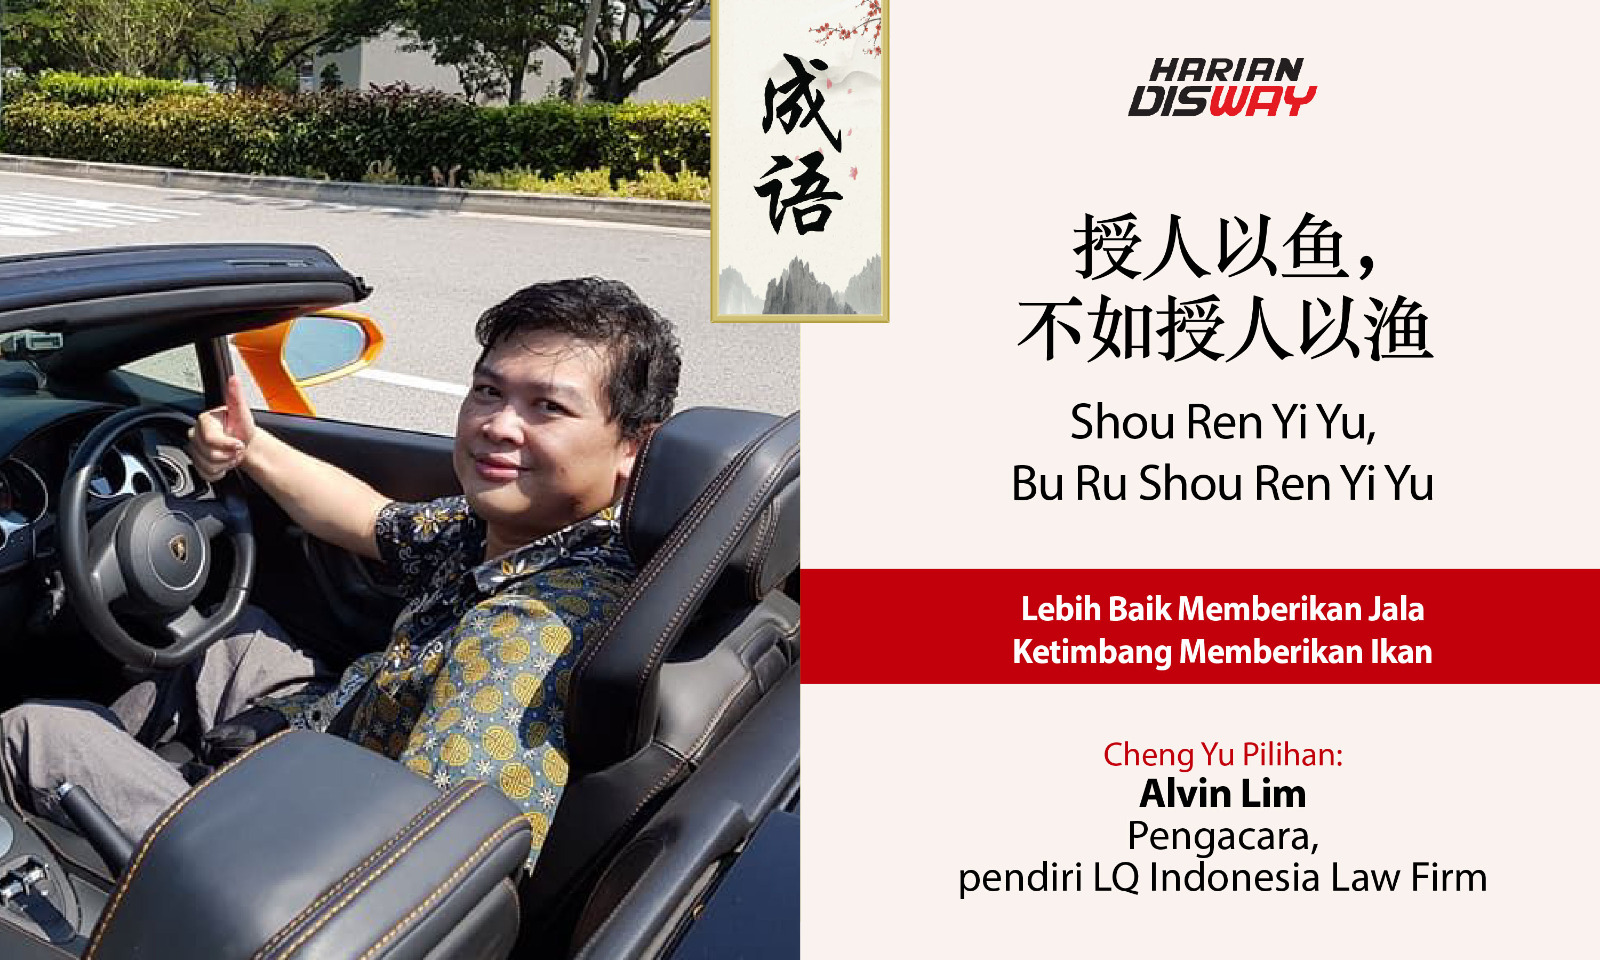 Cheng Yu Pilihan Pengacara dan Pendiri LQ Indonesia Law Firm Alvin Lim: Shou Ren Yi Yu, Bu Ru Shou Ren Yi Yu. 